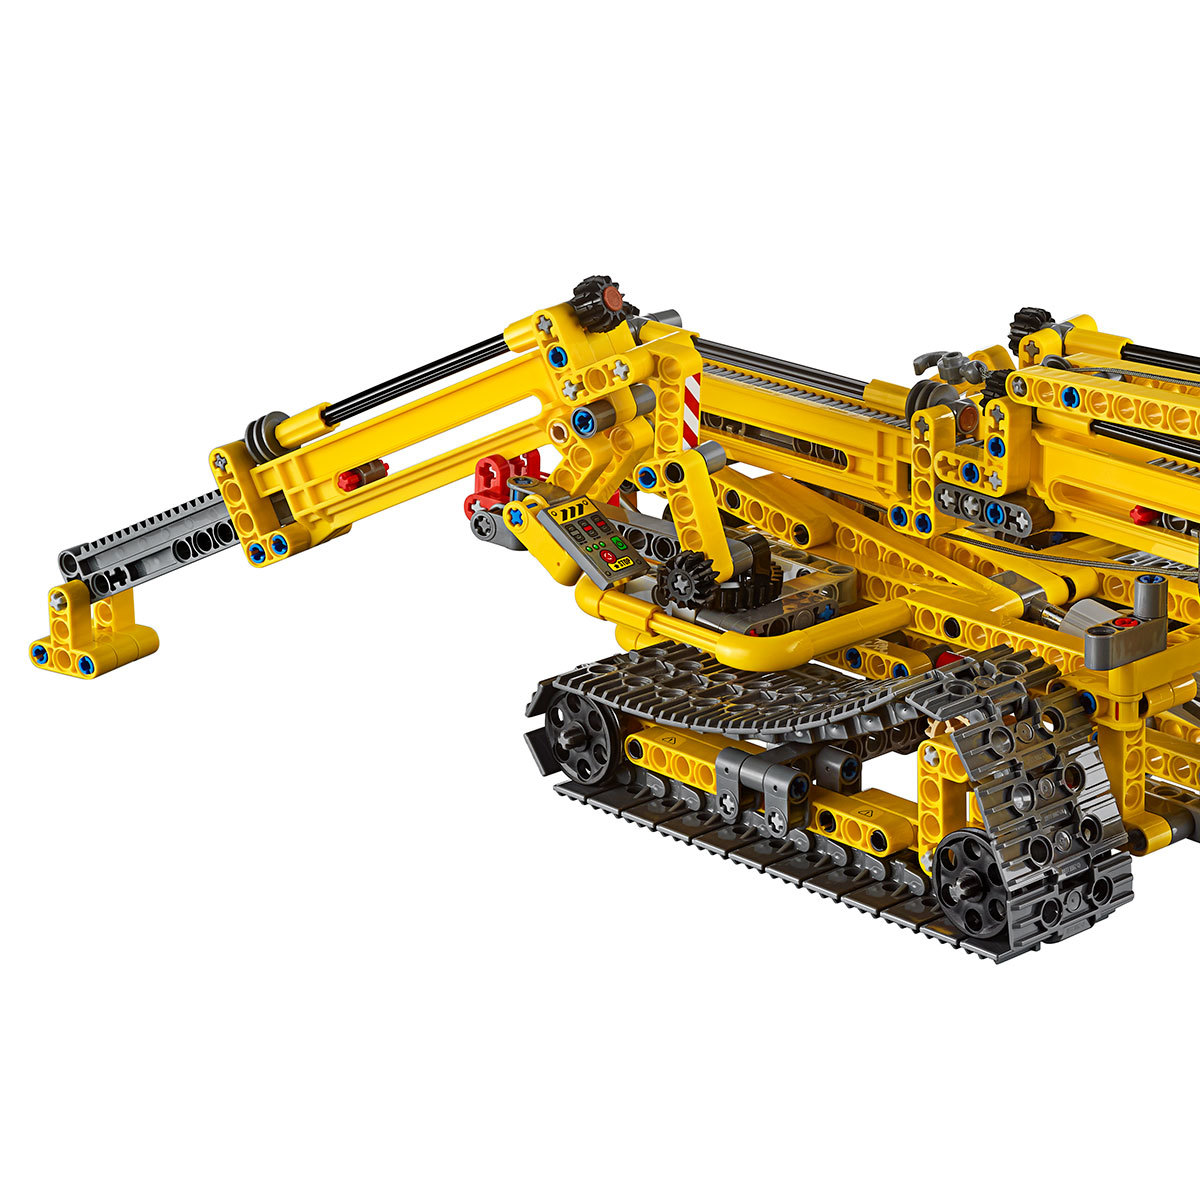 LEGO Technic Compact Crawler Crane - Model 42097 (10+ Years)